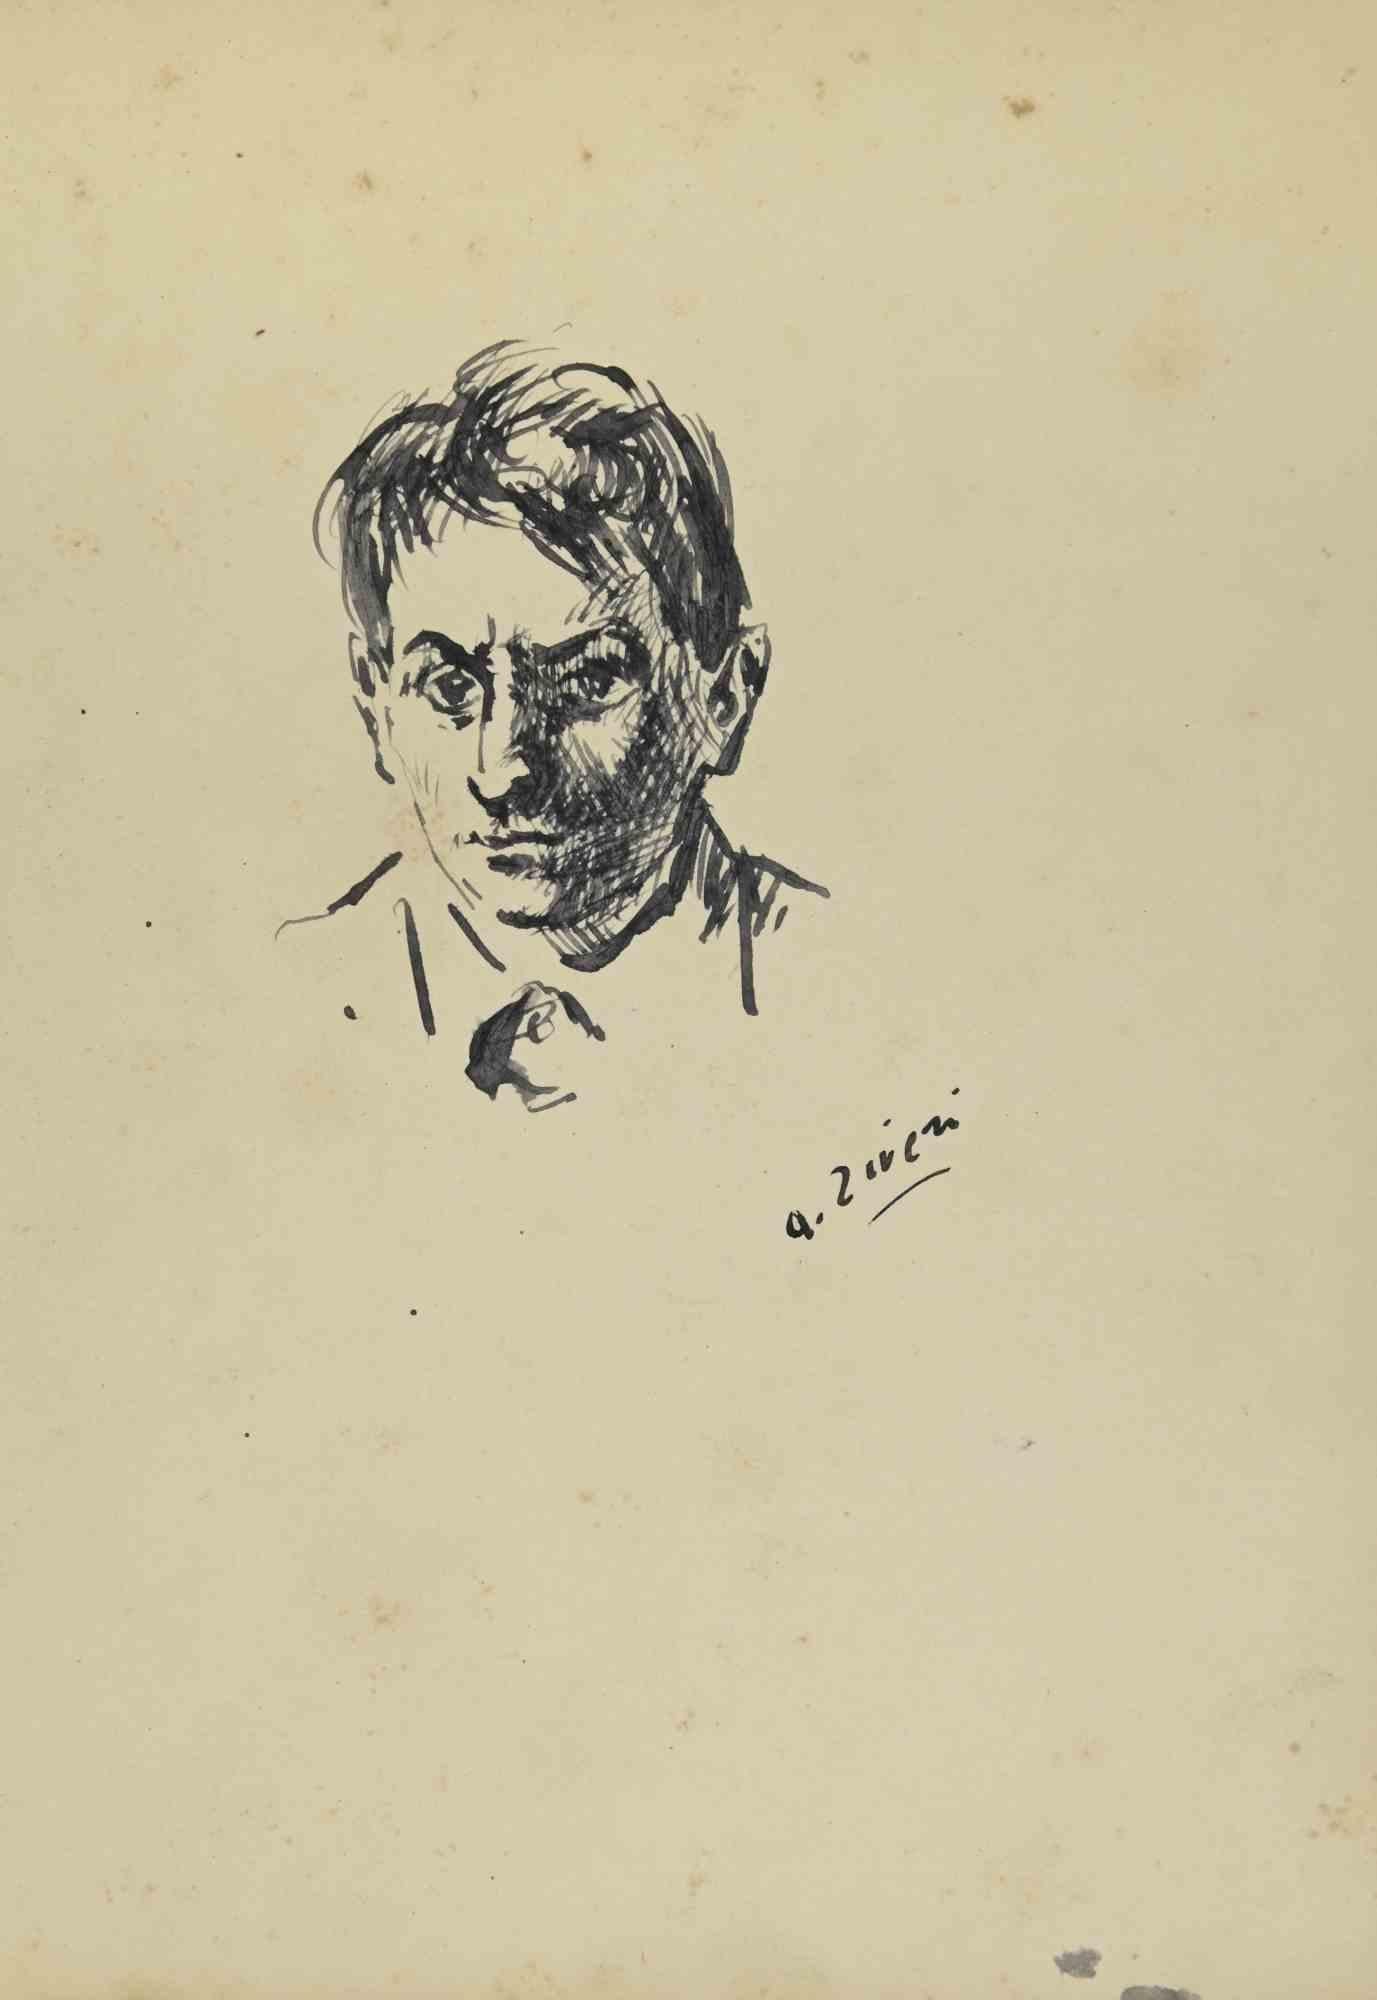 Das Porträt ist eine Zeichnung von Alberto Ziveri aus den 1930er Jahren.

Aquarell auf Papier.

Handsigniert.

In gutem Zustand.

Das Kunstwerk wird durch geschickte Striche meisterhaft dargestellt.

Alberto Ziveri (Rom, 1908 - 1990), der